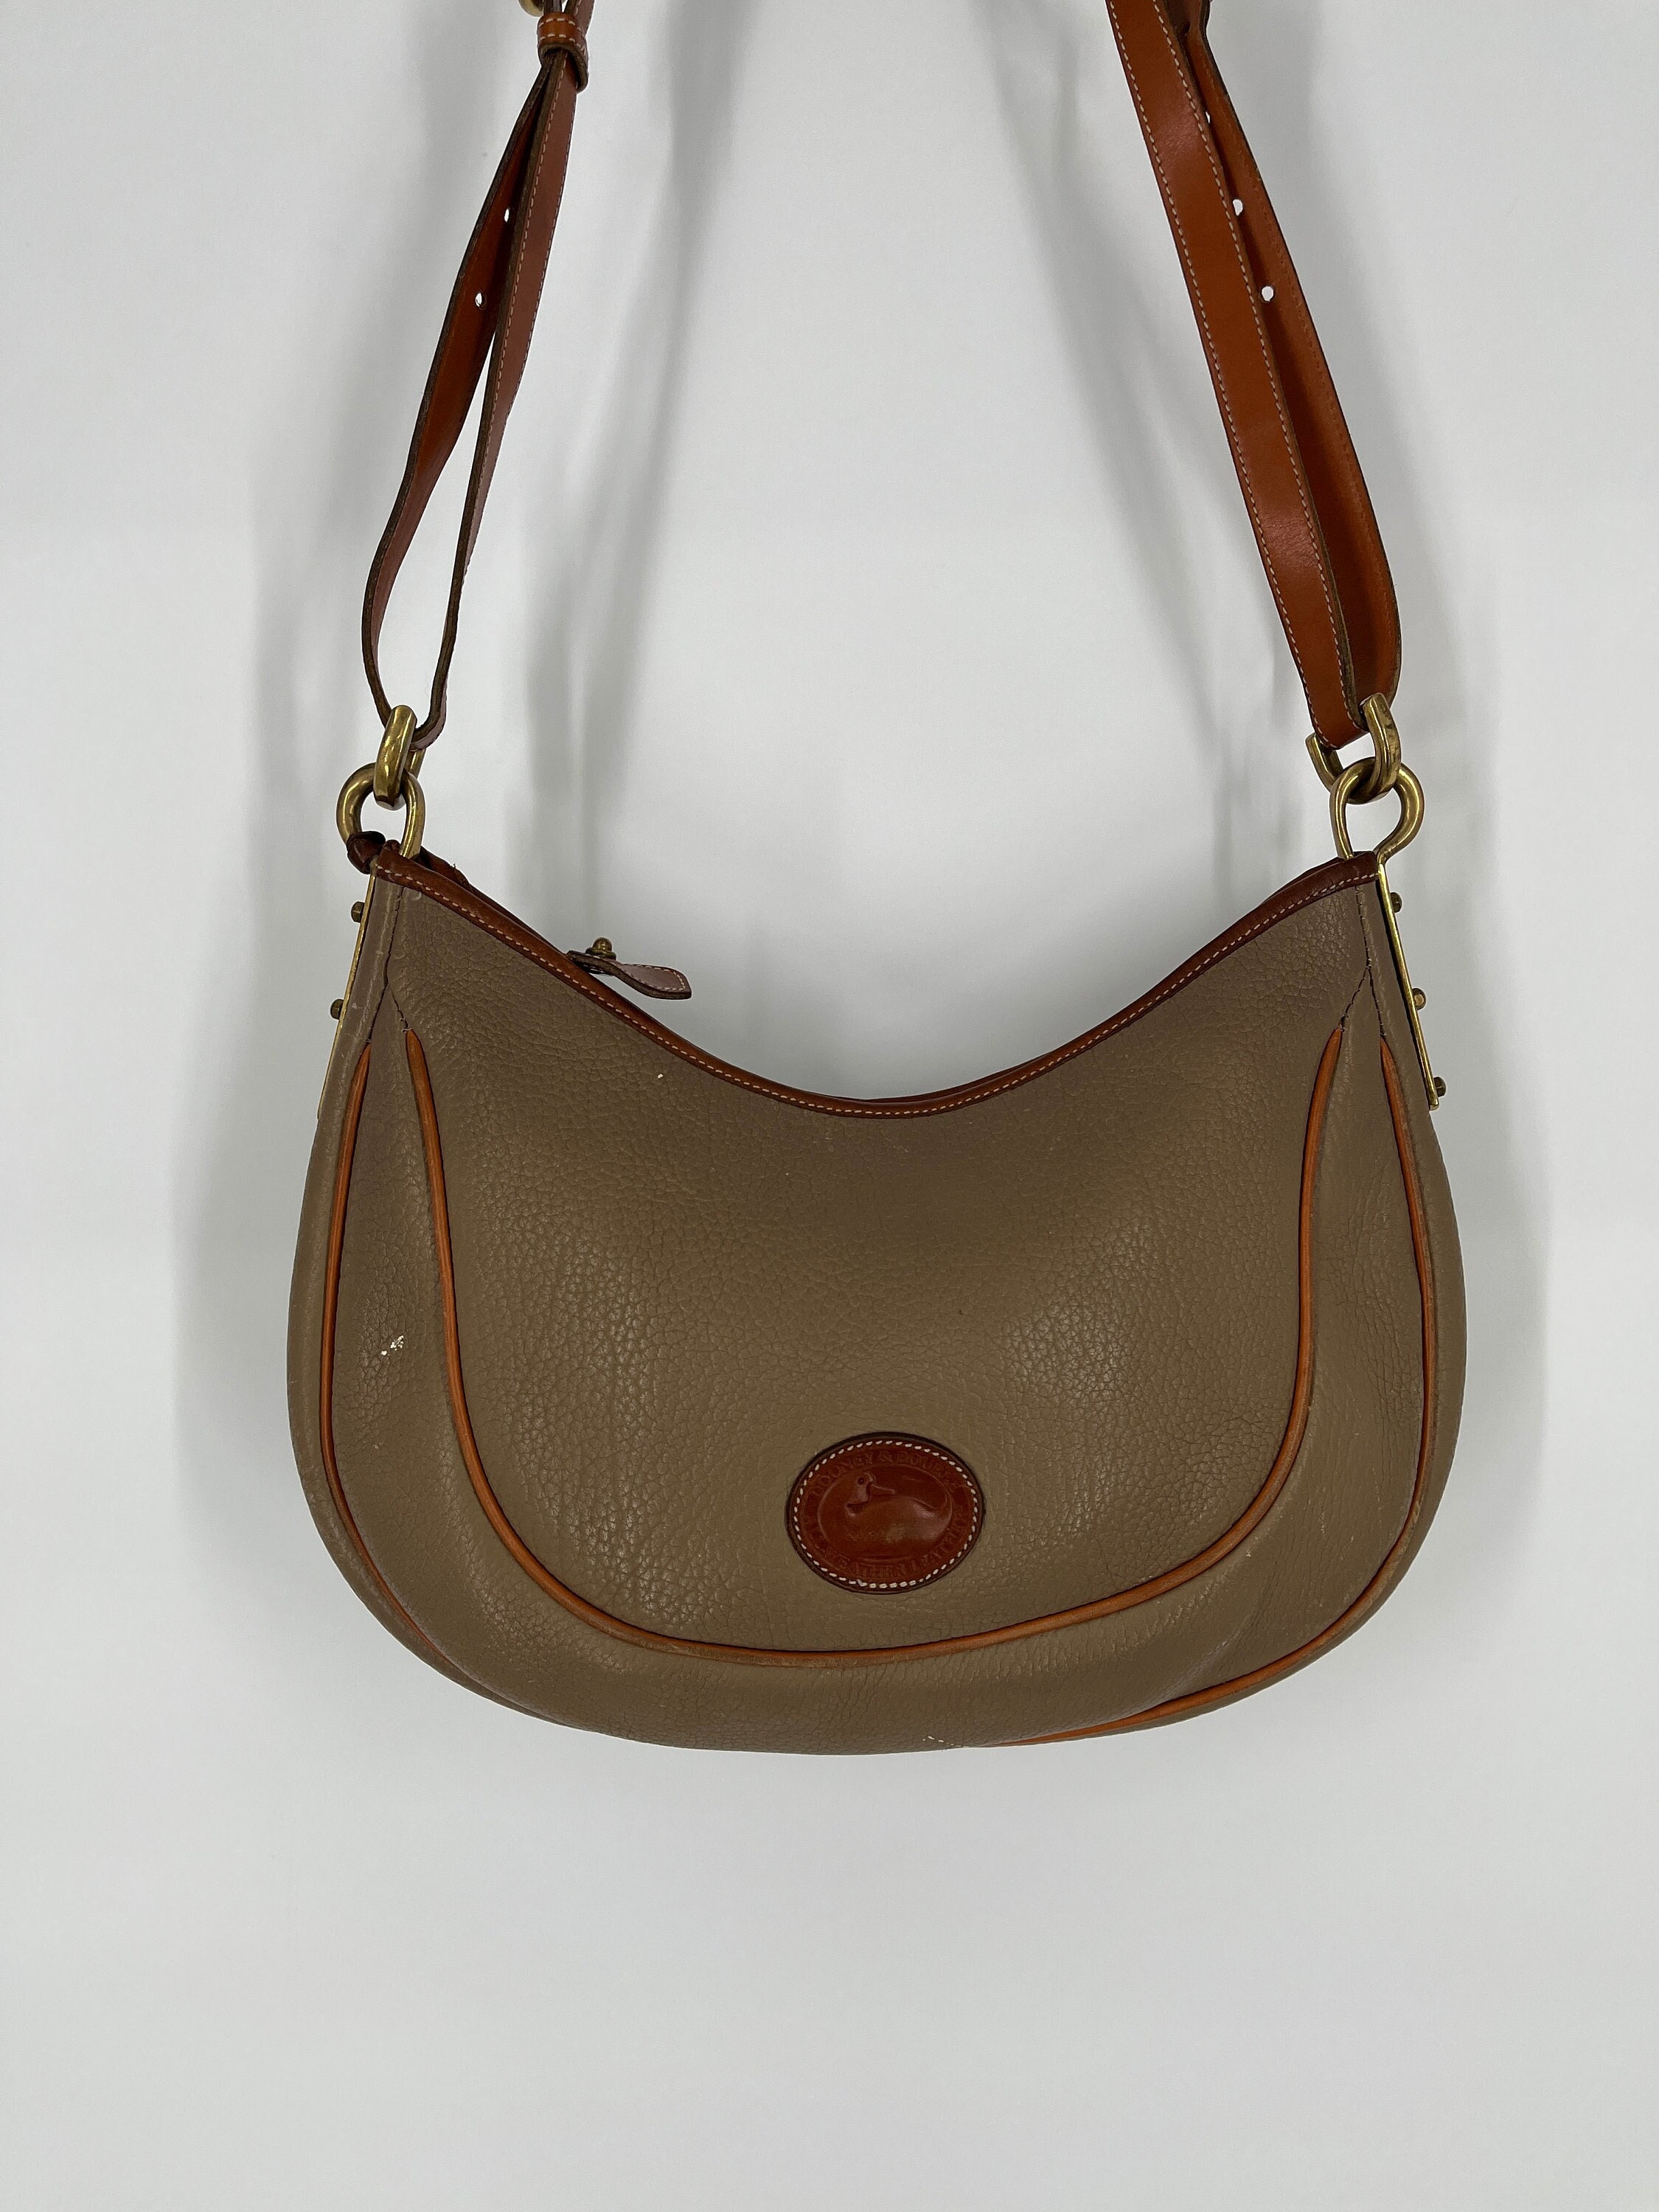 Vintage Dooney & Bourke Taupe Crescent Shoulder Bag \ Made in USA \ Please See Item Description for Measurements and Details